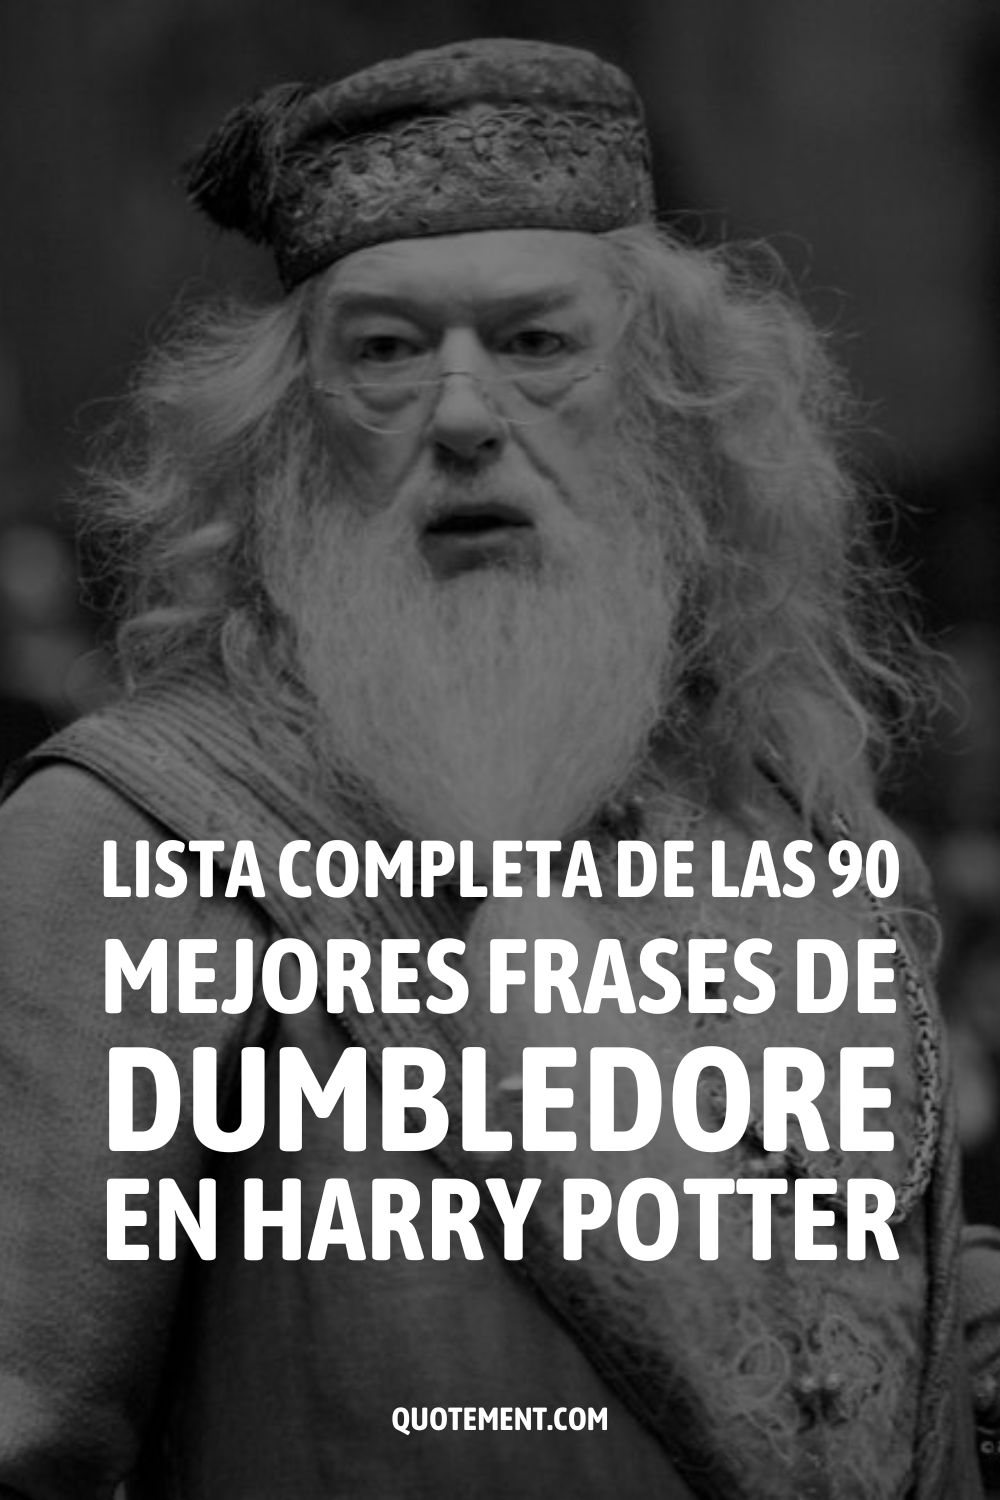 Lista completa de las 90 mejores frases de Dumbledore en Harry Potter